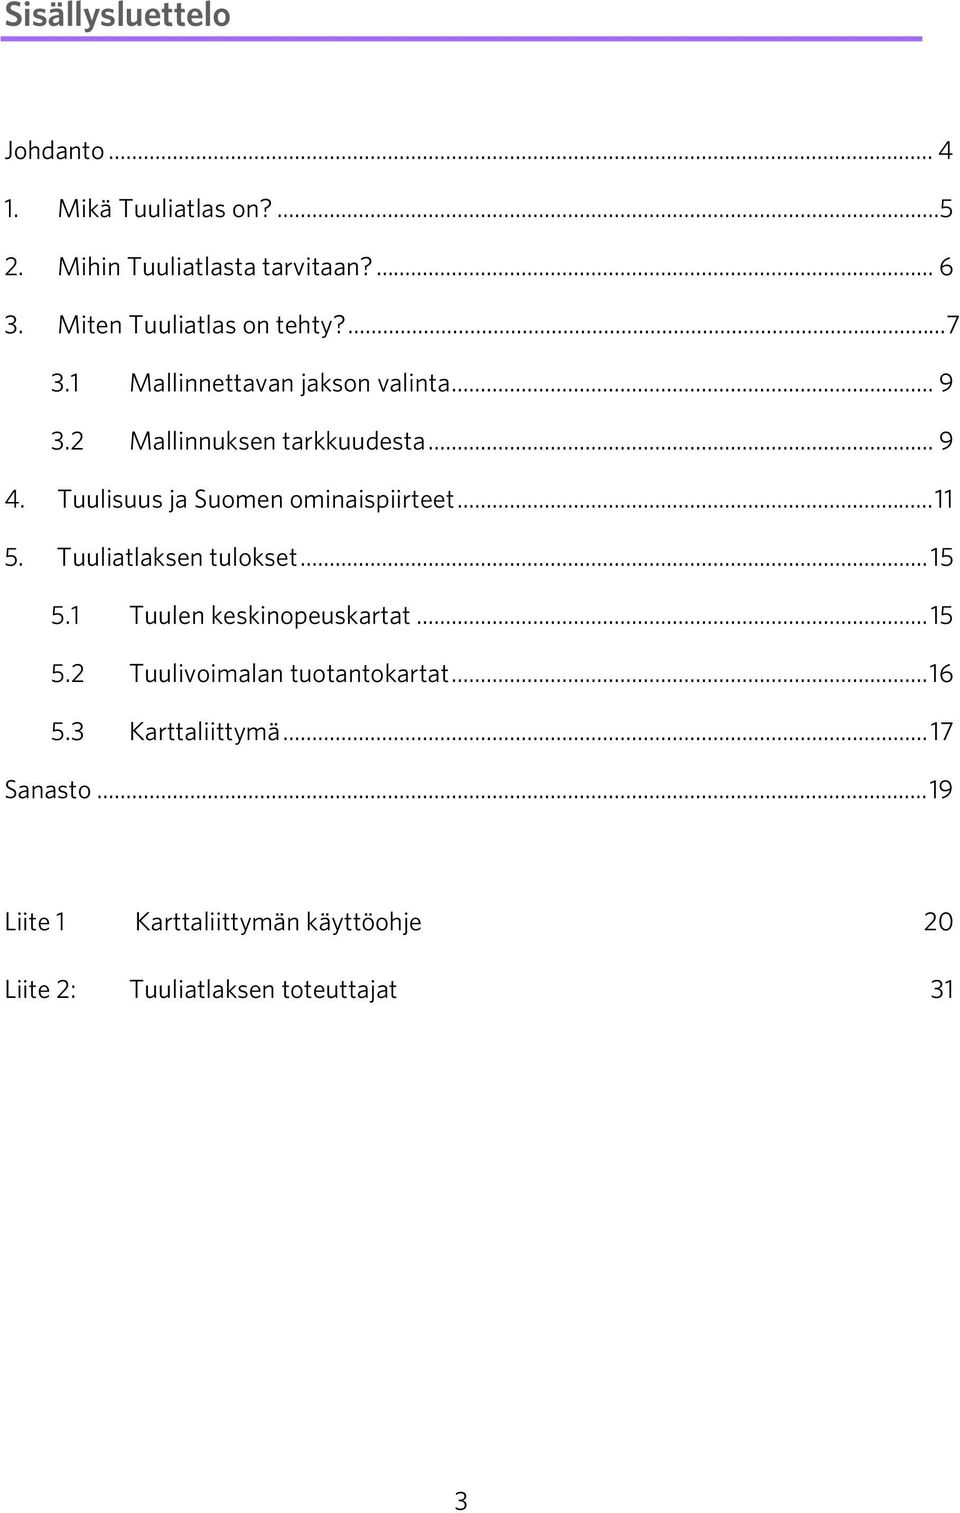 Tuulisuus ja Suomen ominaispiirteet...11 5. Tuuliatlaksen tulokset...15 5.1 Tuulen keskinopeuskartat...15 5.2 Tuulivoimalan tuotantokartat.